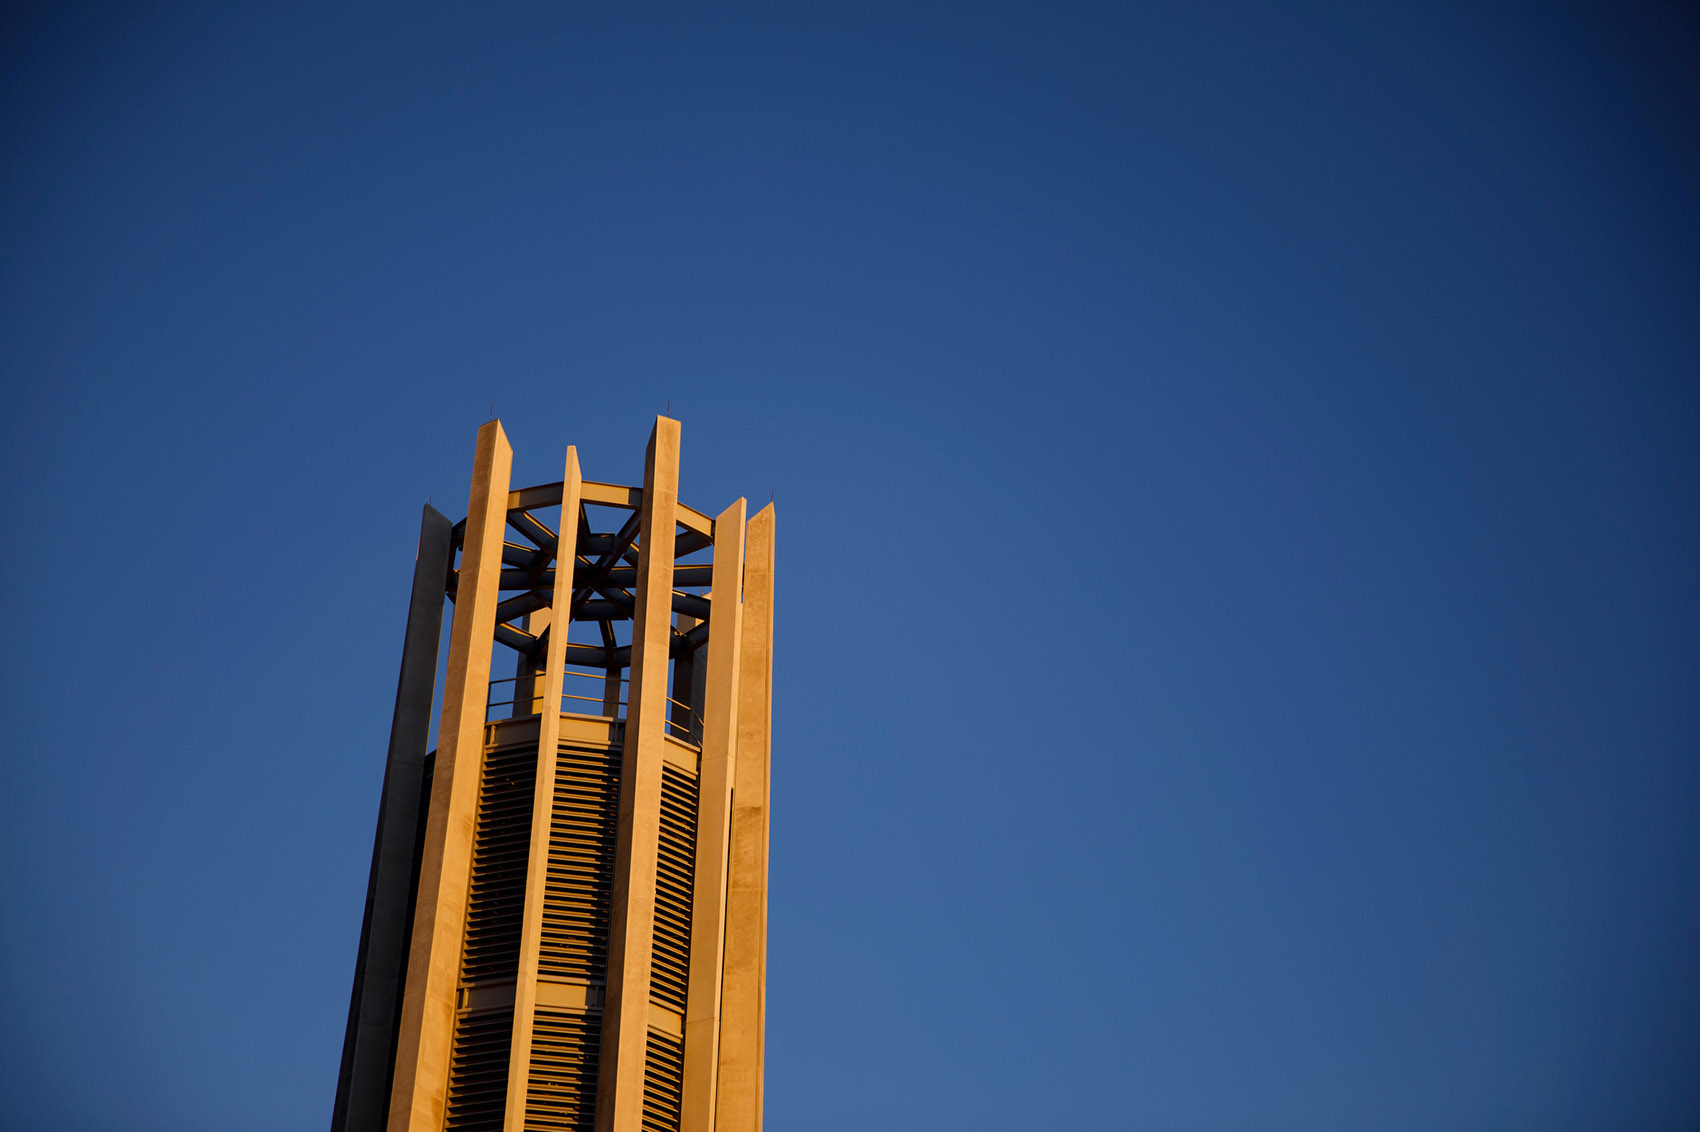 印第安纳大学钟琴塔，美国/印第安纳大学两百周年校庆的纪念钟塔-26